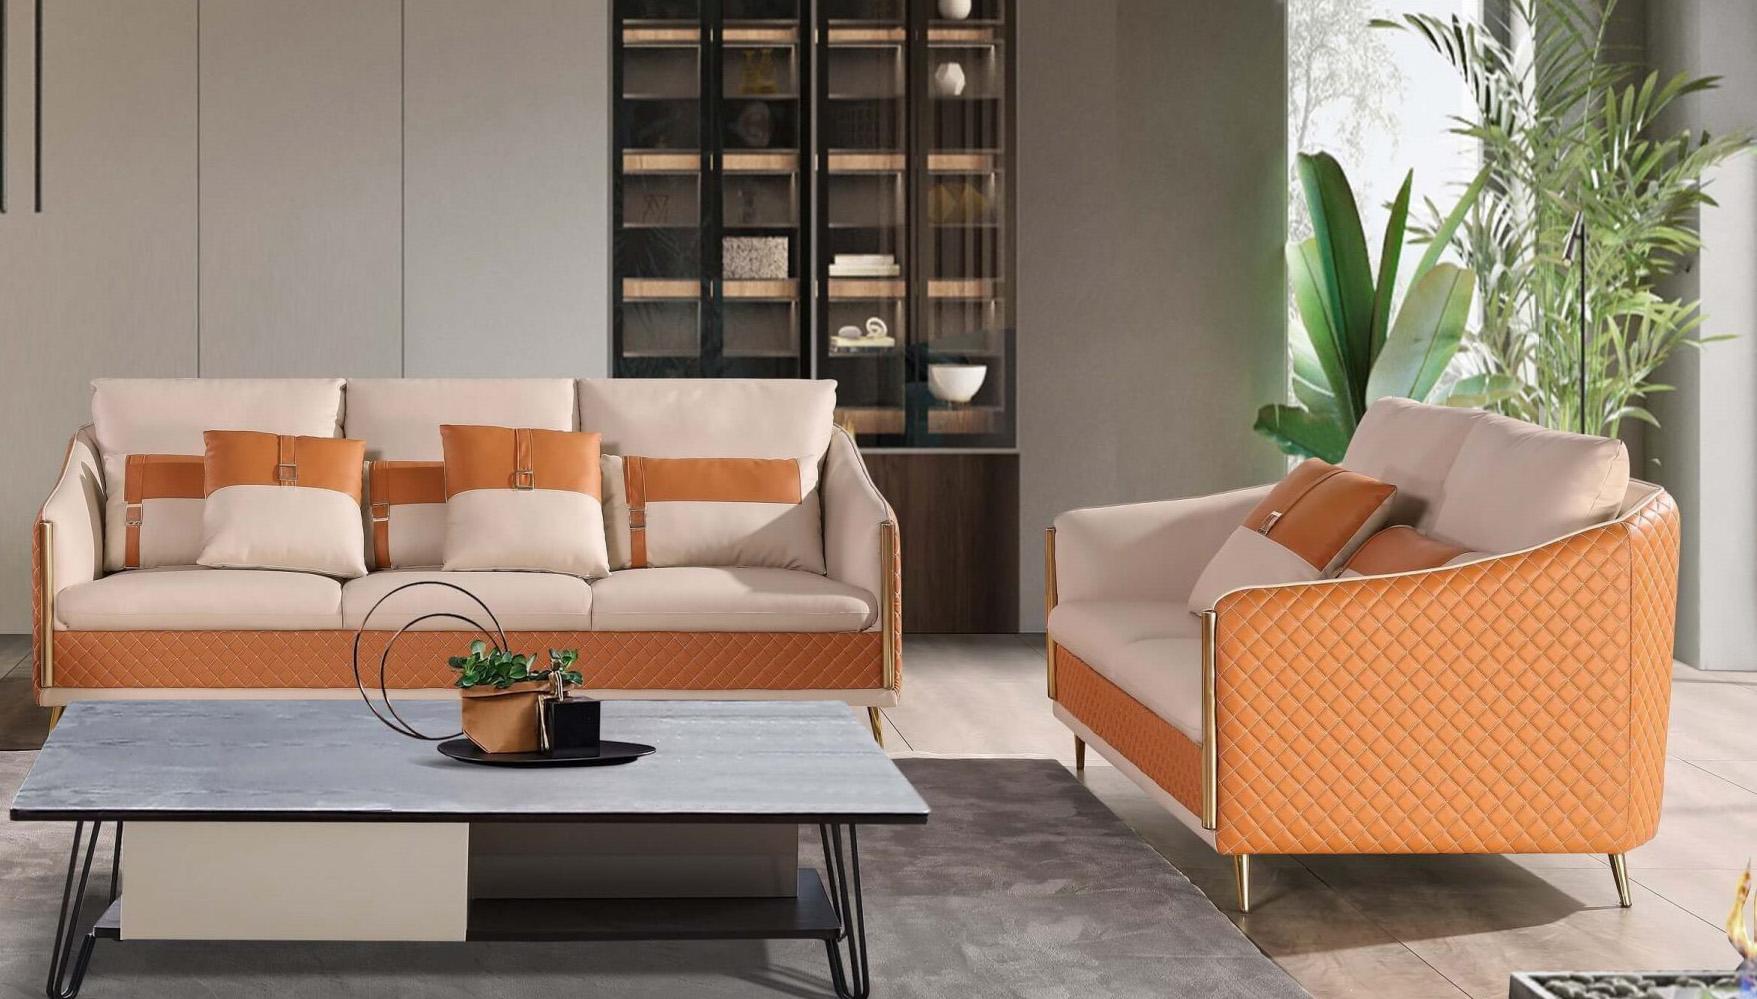 

    
Italian Leather Off White & Orange Sofa Set 2Pcs ICARO EUROPEAN FURNITURE Modern
